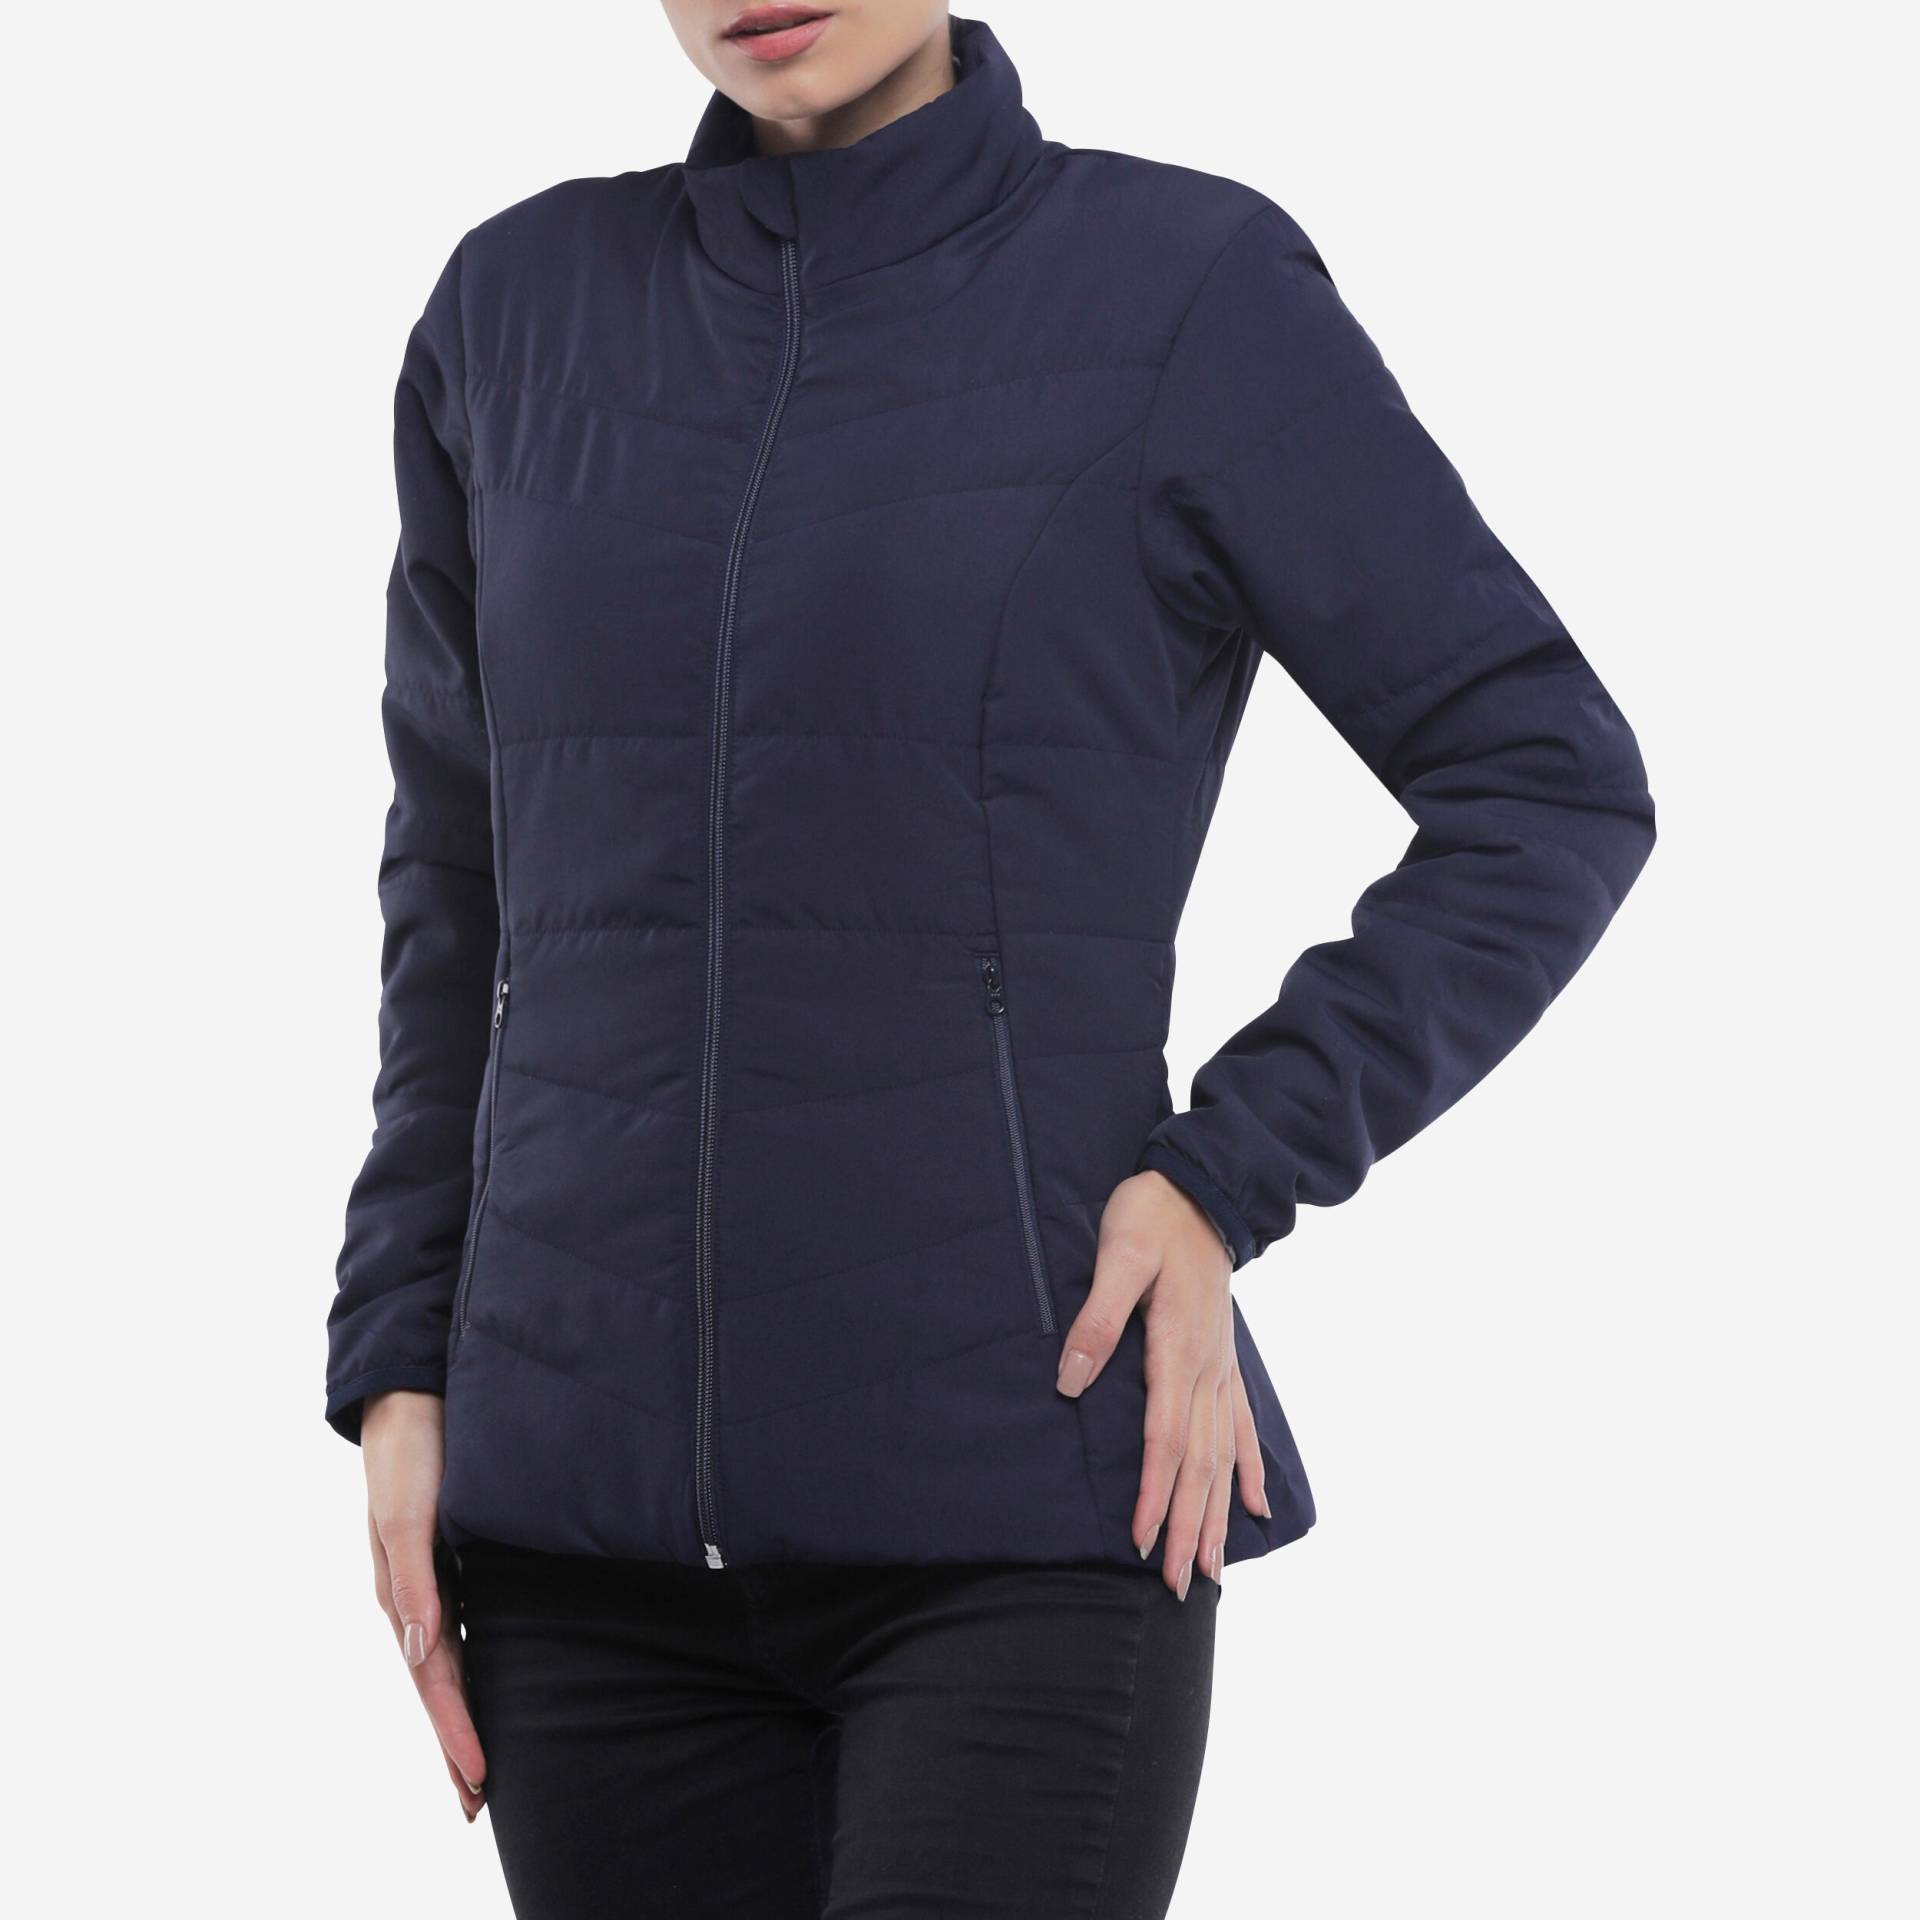 Wattierte Jacke Damen bis 0 °C Bergwandern - MT50 marineblau von FORCLAZ